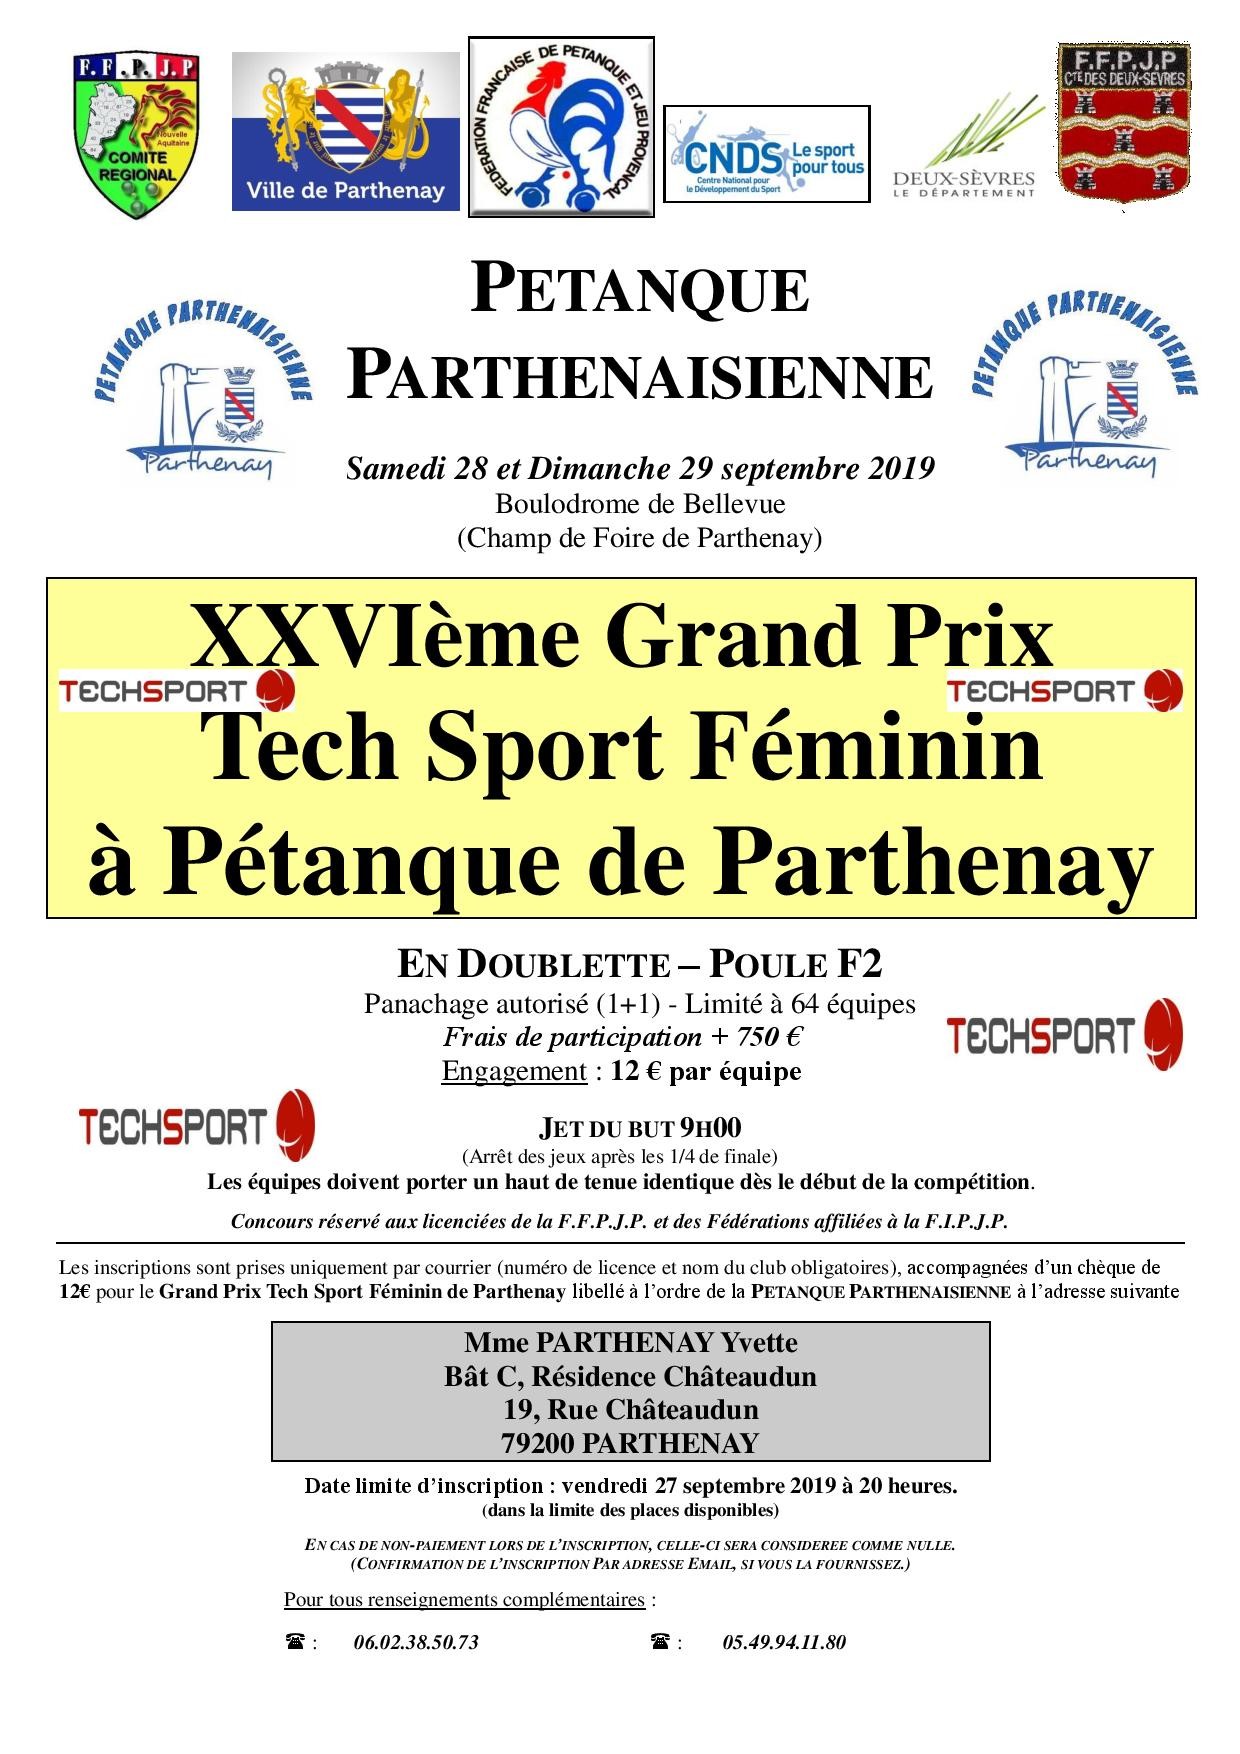 XXVIème Grand Prix Doublette Féminin TechSport à pétanque de Parthenay